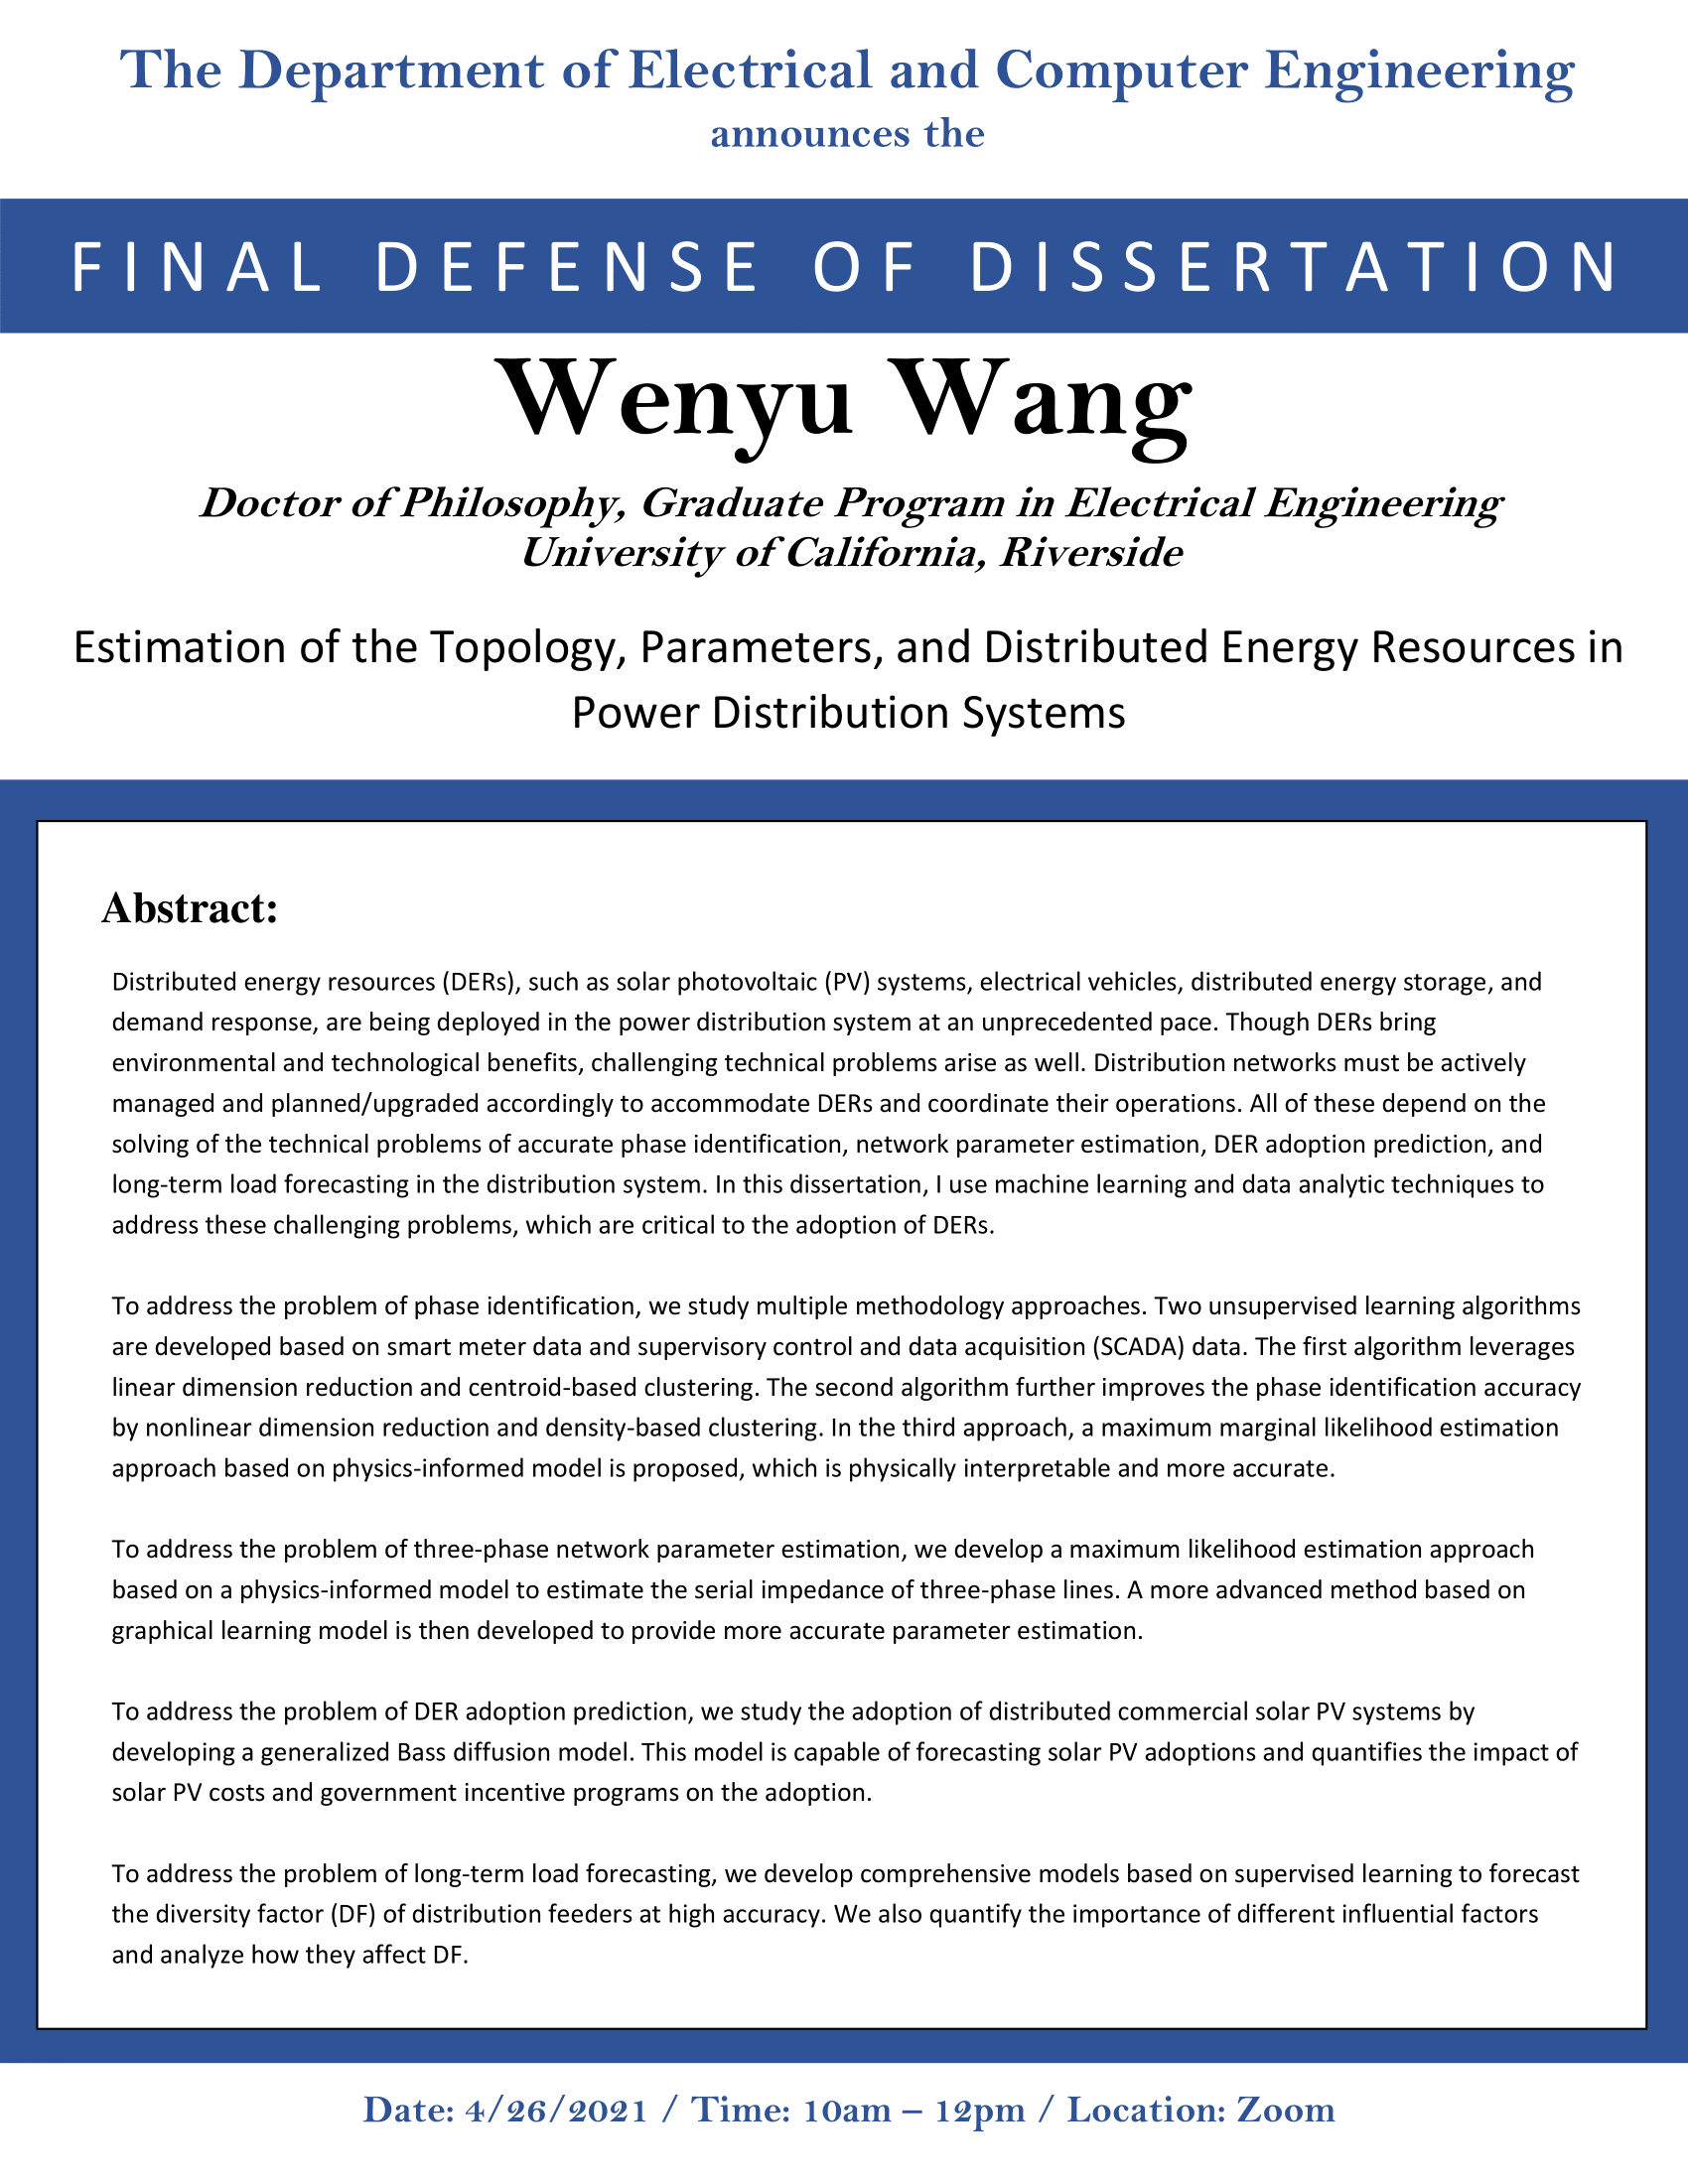 WANG, Wengyu